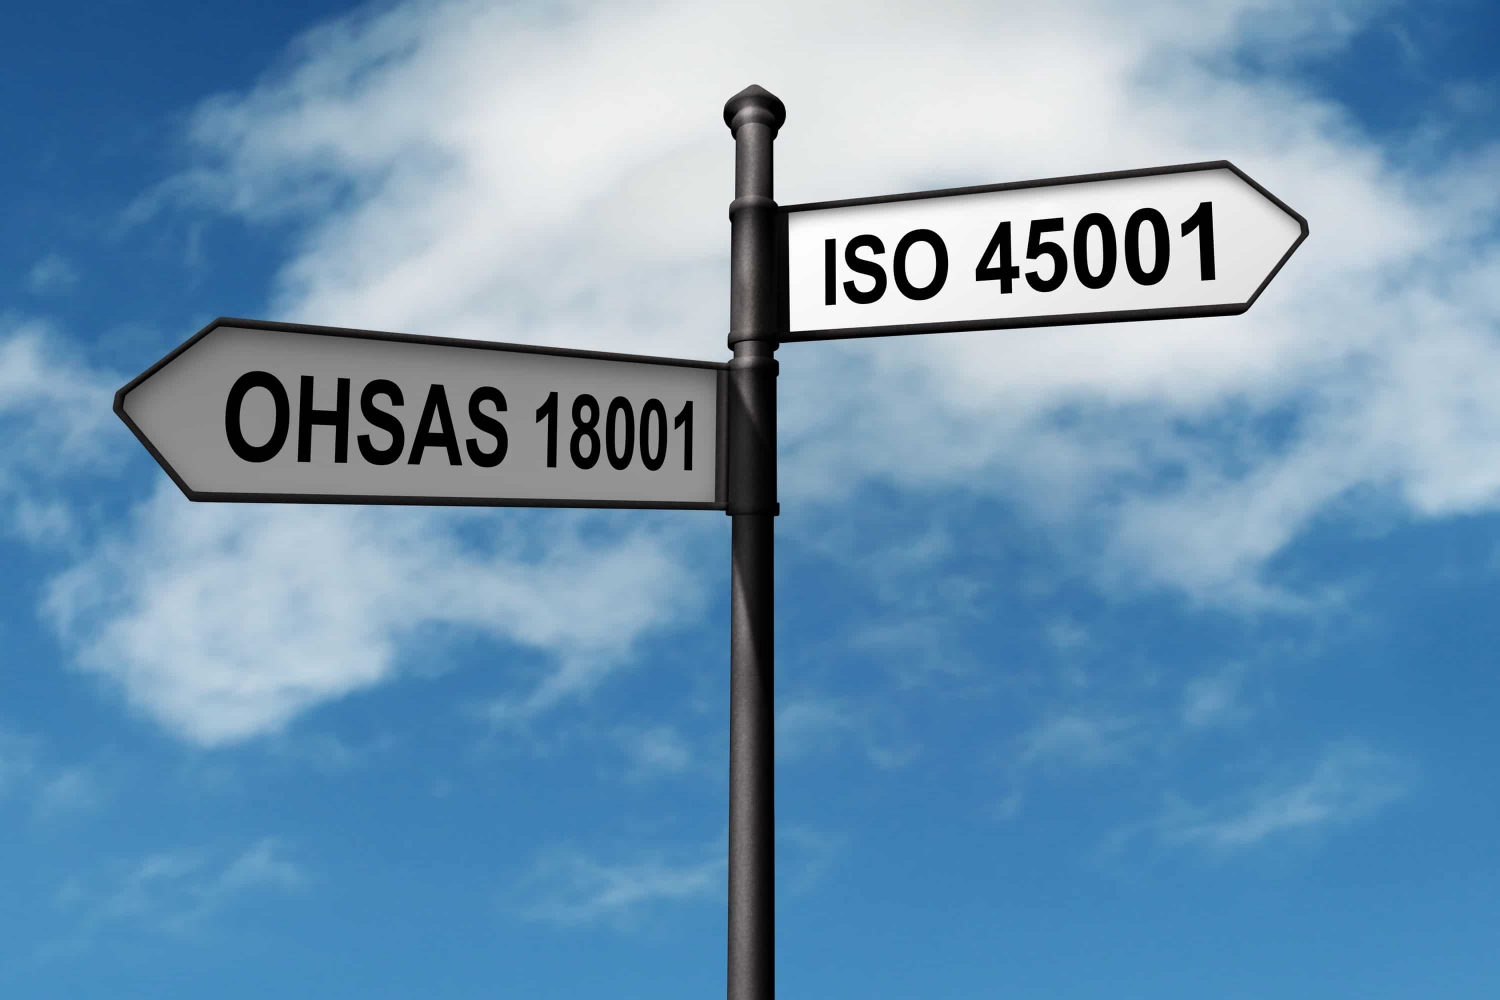 Thông báo thời gian chuyển đổi Hệ thống quản lý An toàn & Sức khỏe Nghề nghiệp theo tiêu chuẩn  ISO 45001:2018